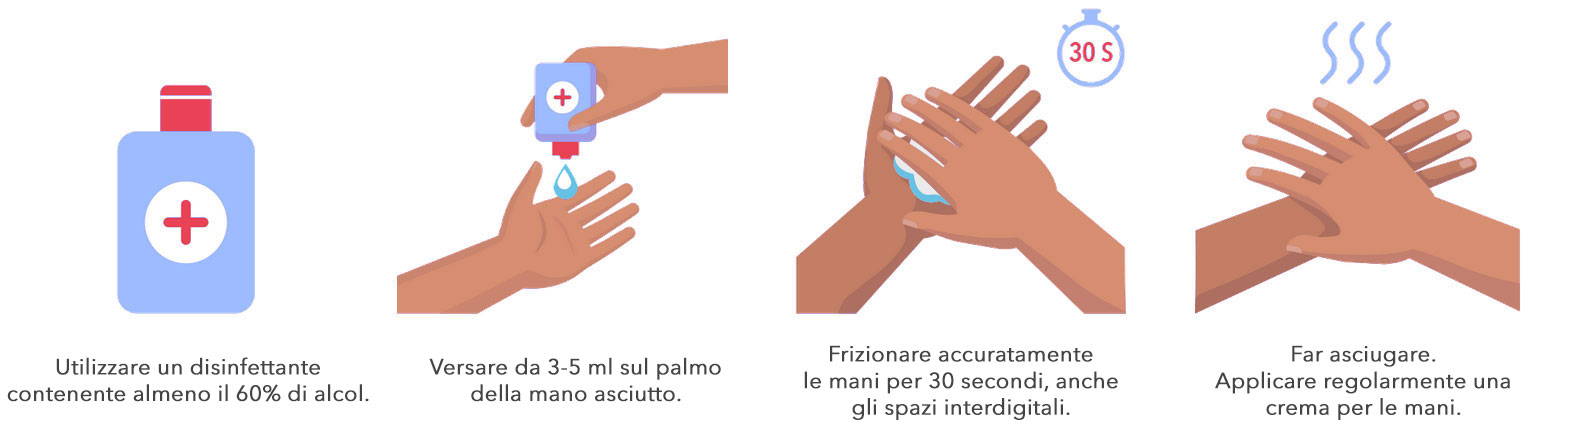 Grafica - Come disinfettare correttamente le mani